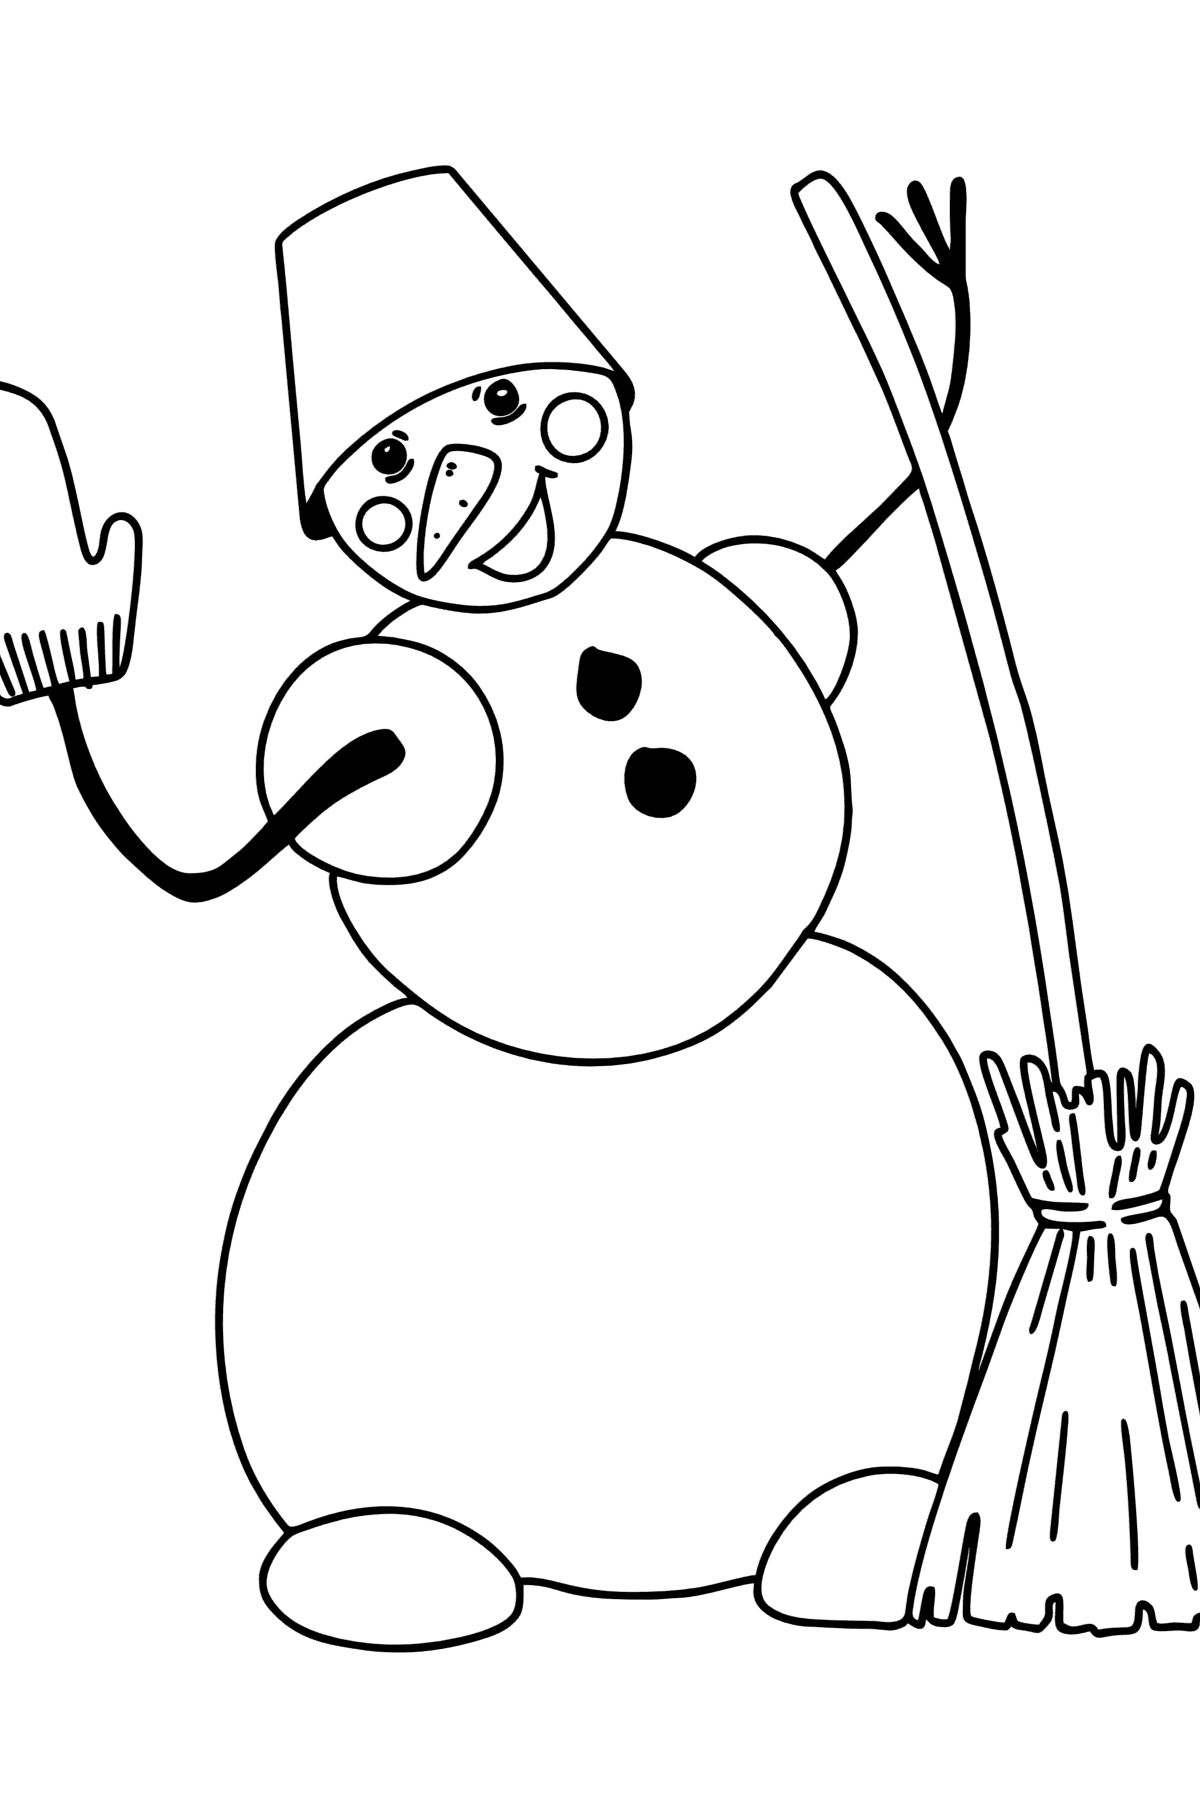 Kleurplaat sneeuwpop met bezem - kleurplaten voor kinderen